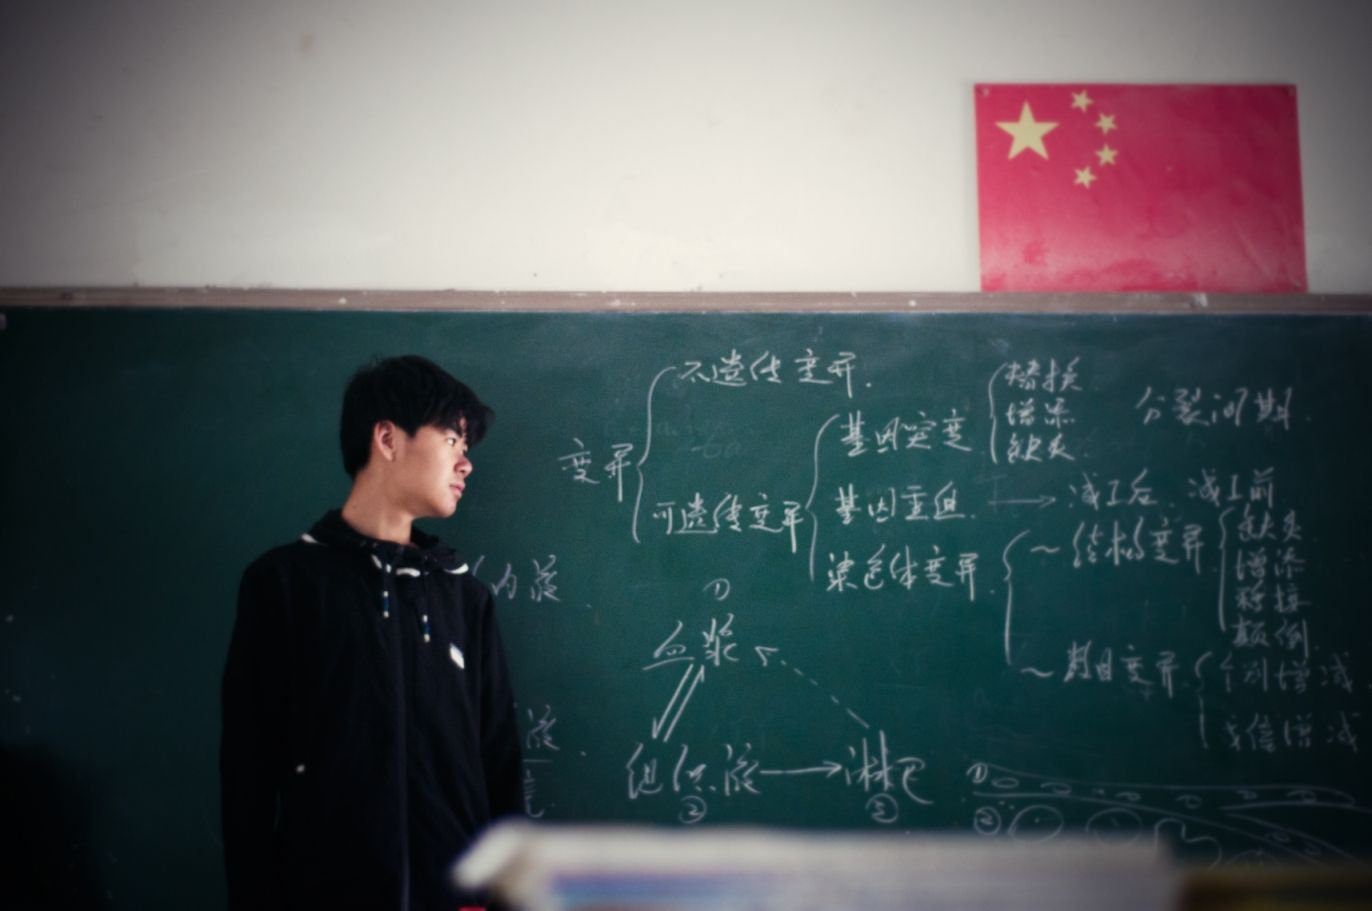 Chinese students flee US amid China trade war